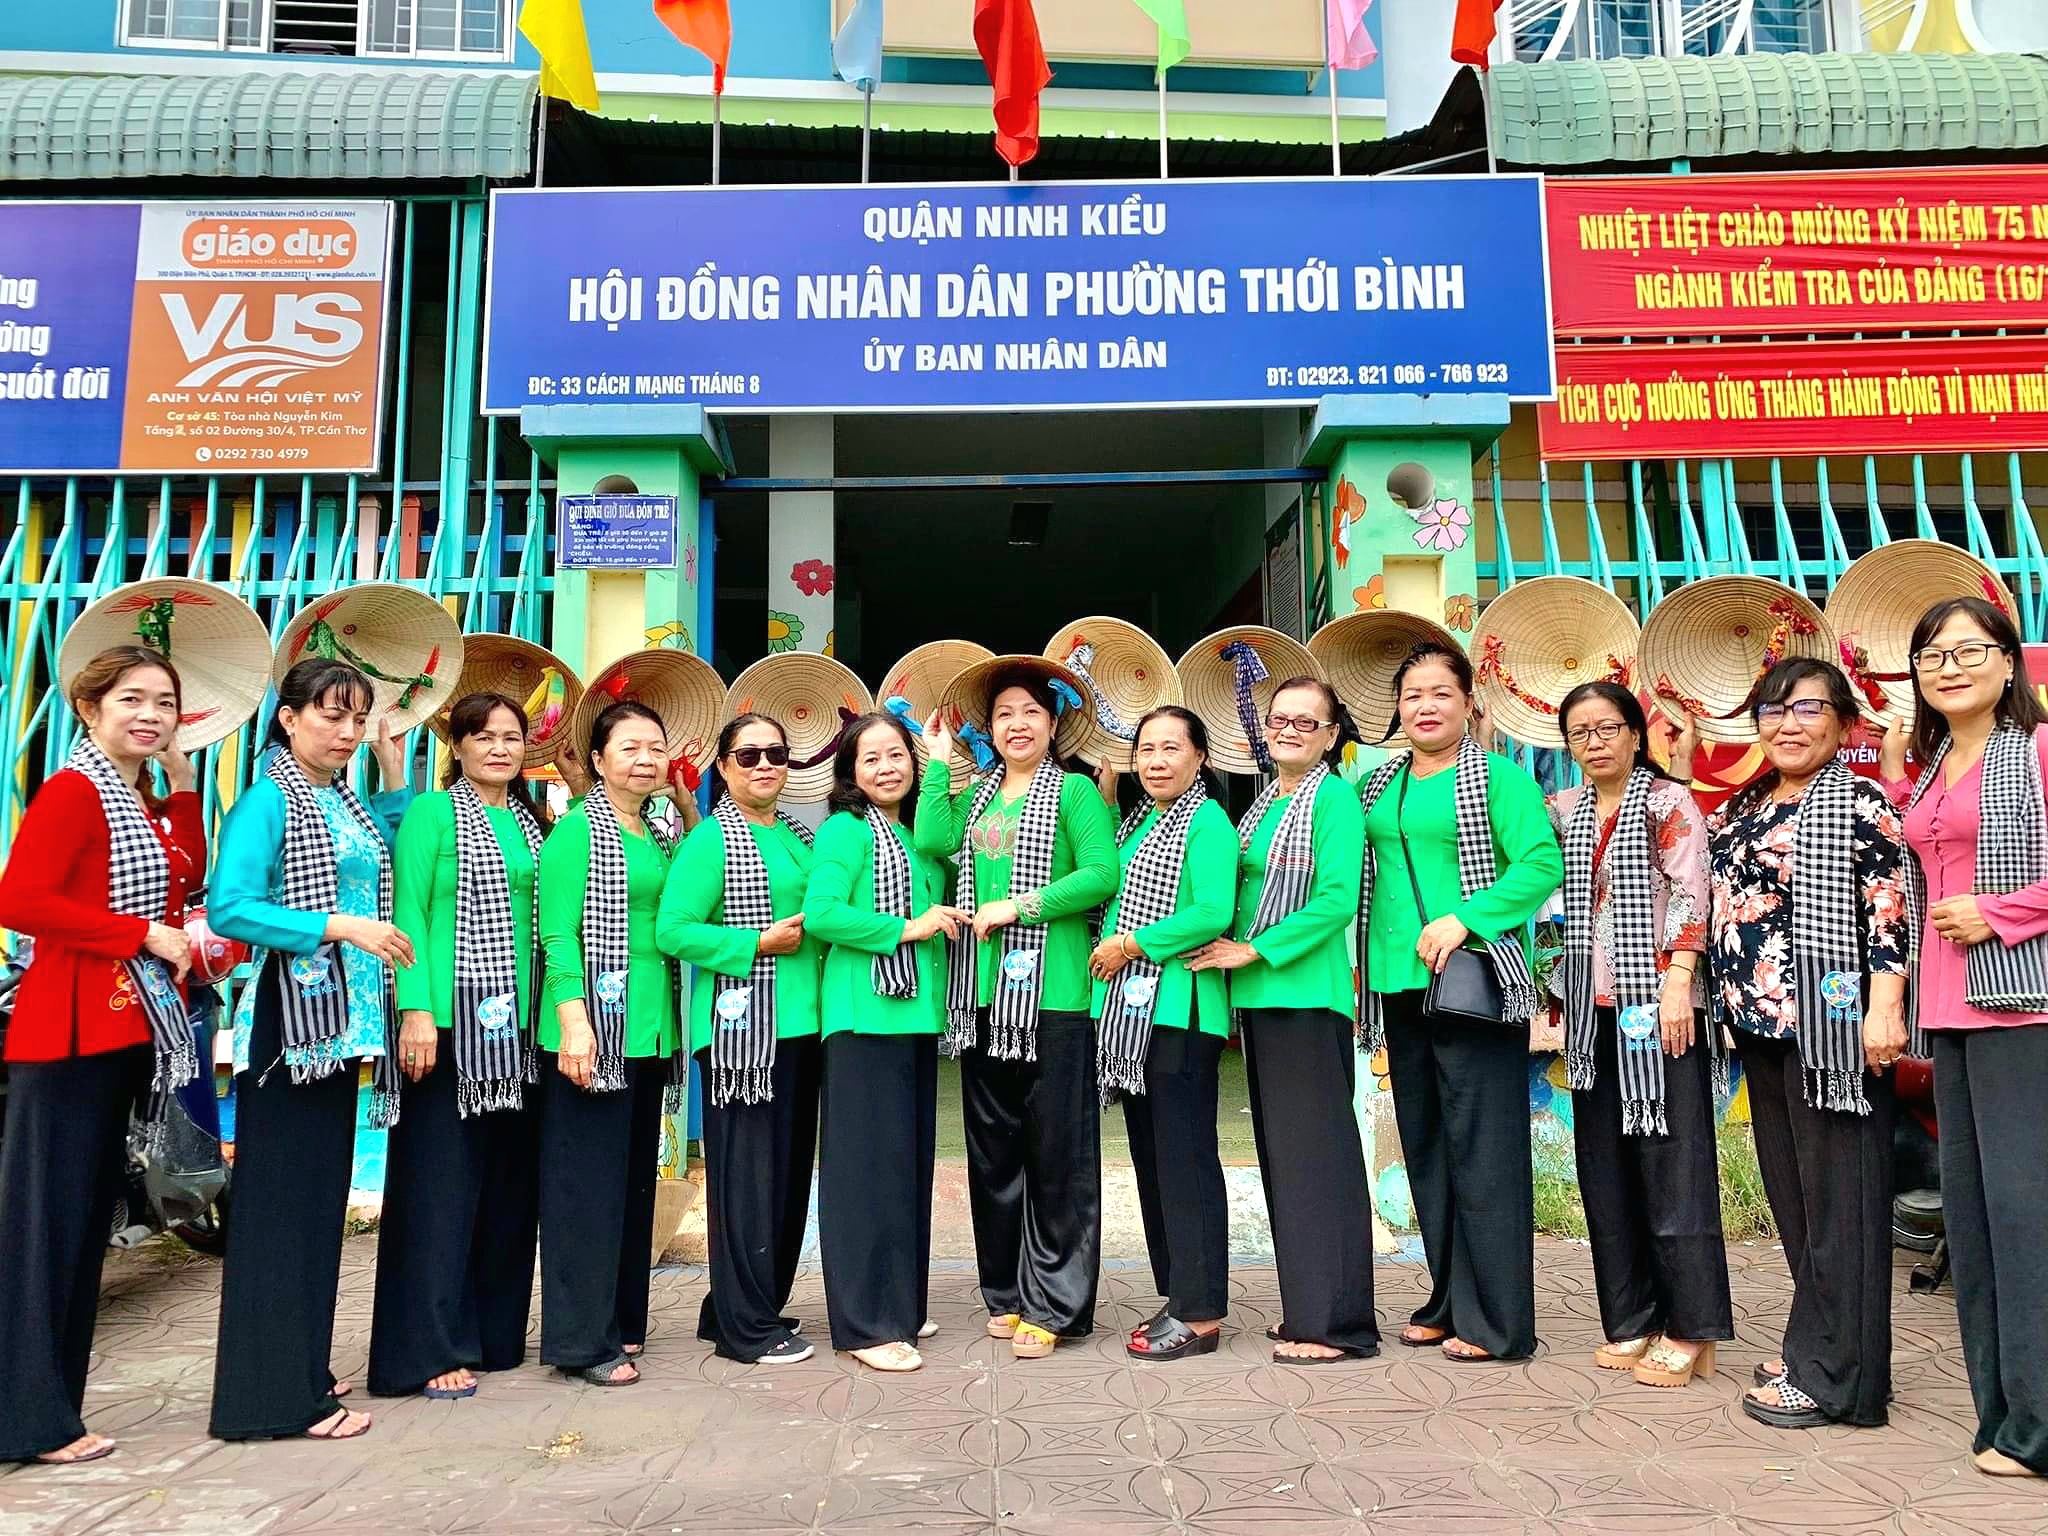 Chị em cán bộ UBND phường Thới Bình, quận Ninh Kiều mặc trang phục áo bà ba.